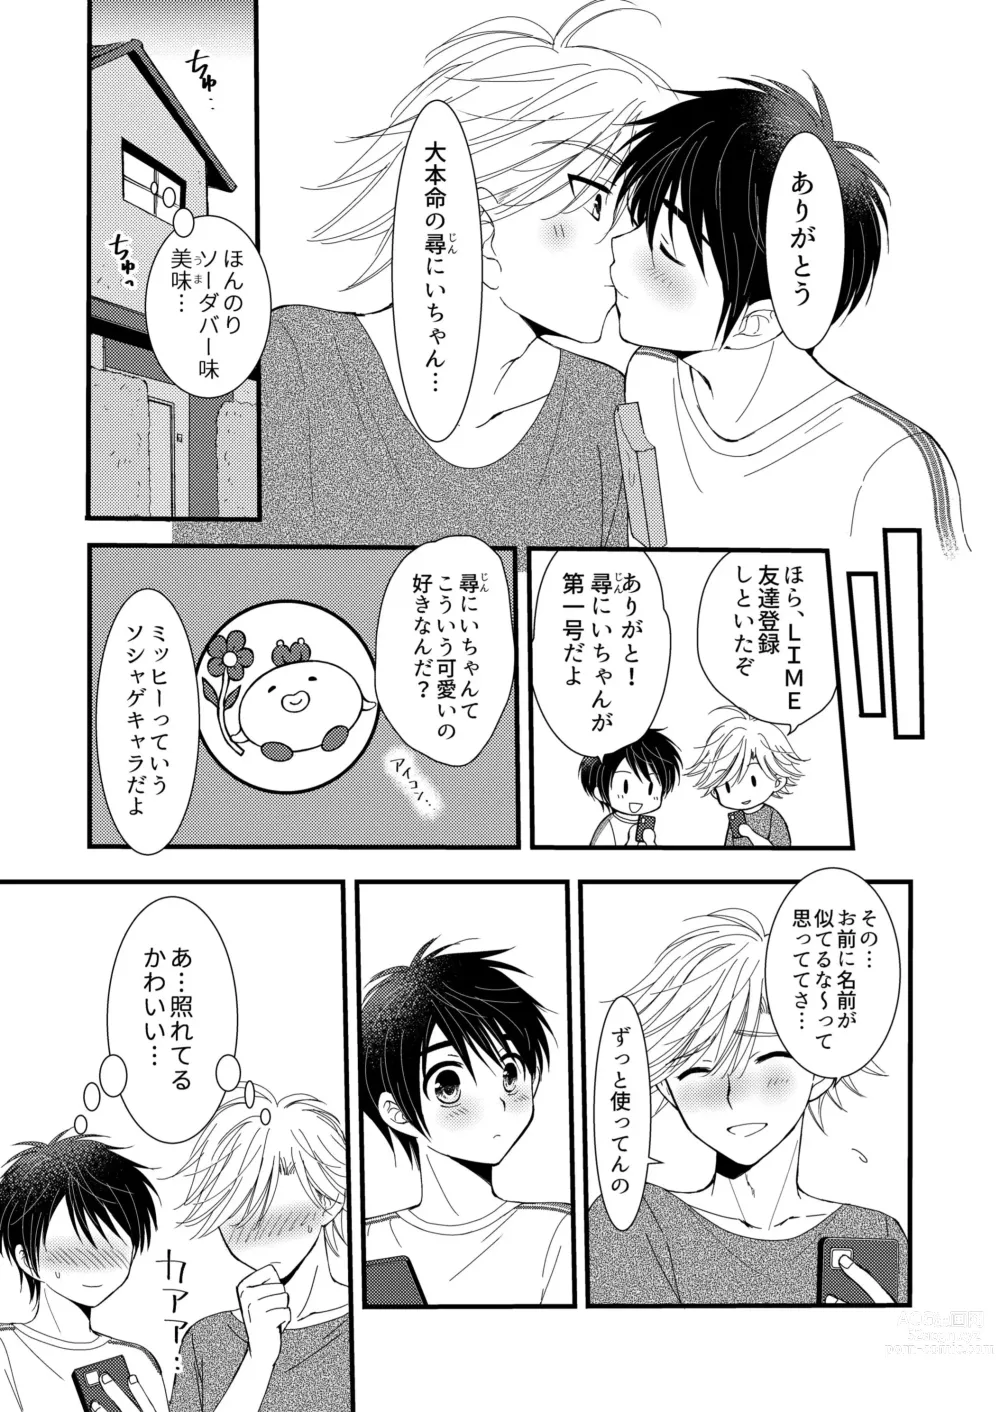 Page 45 of doujinshi Oitekita Umi